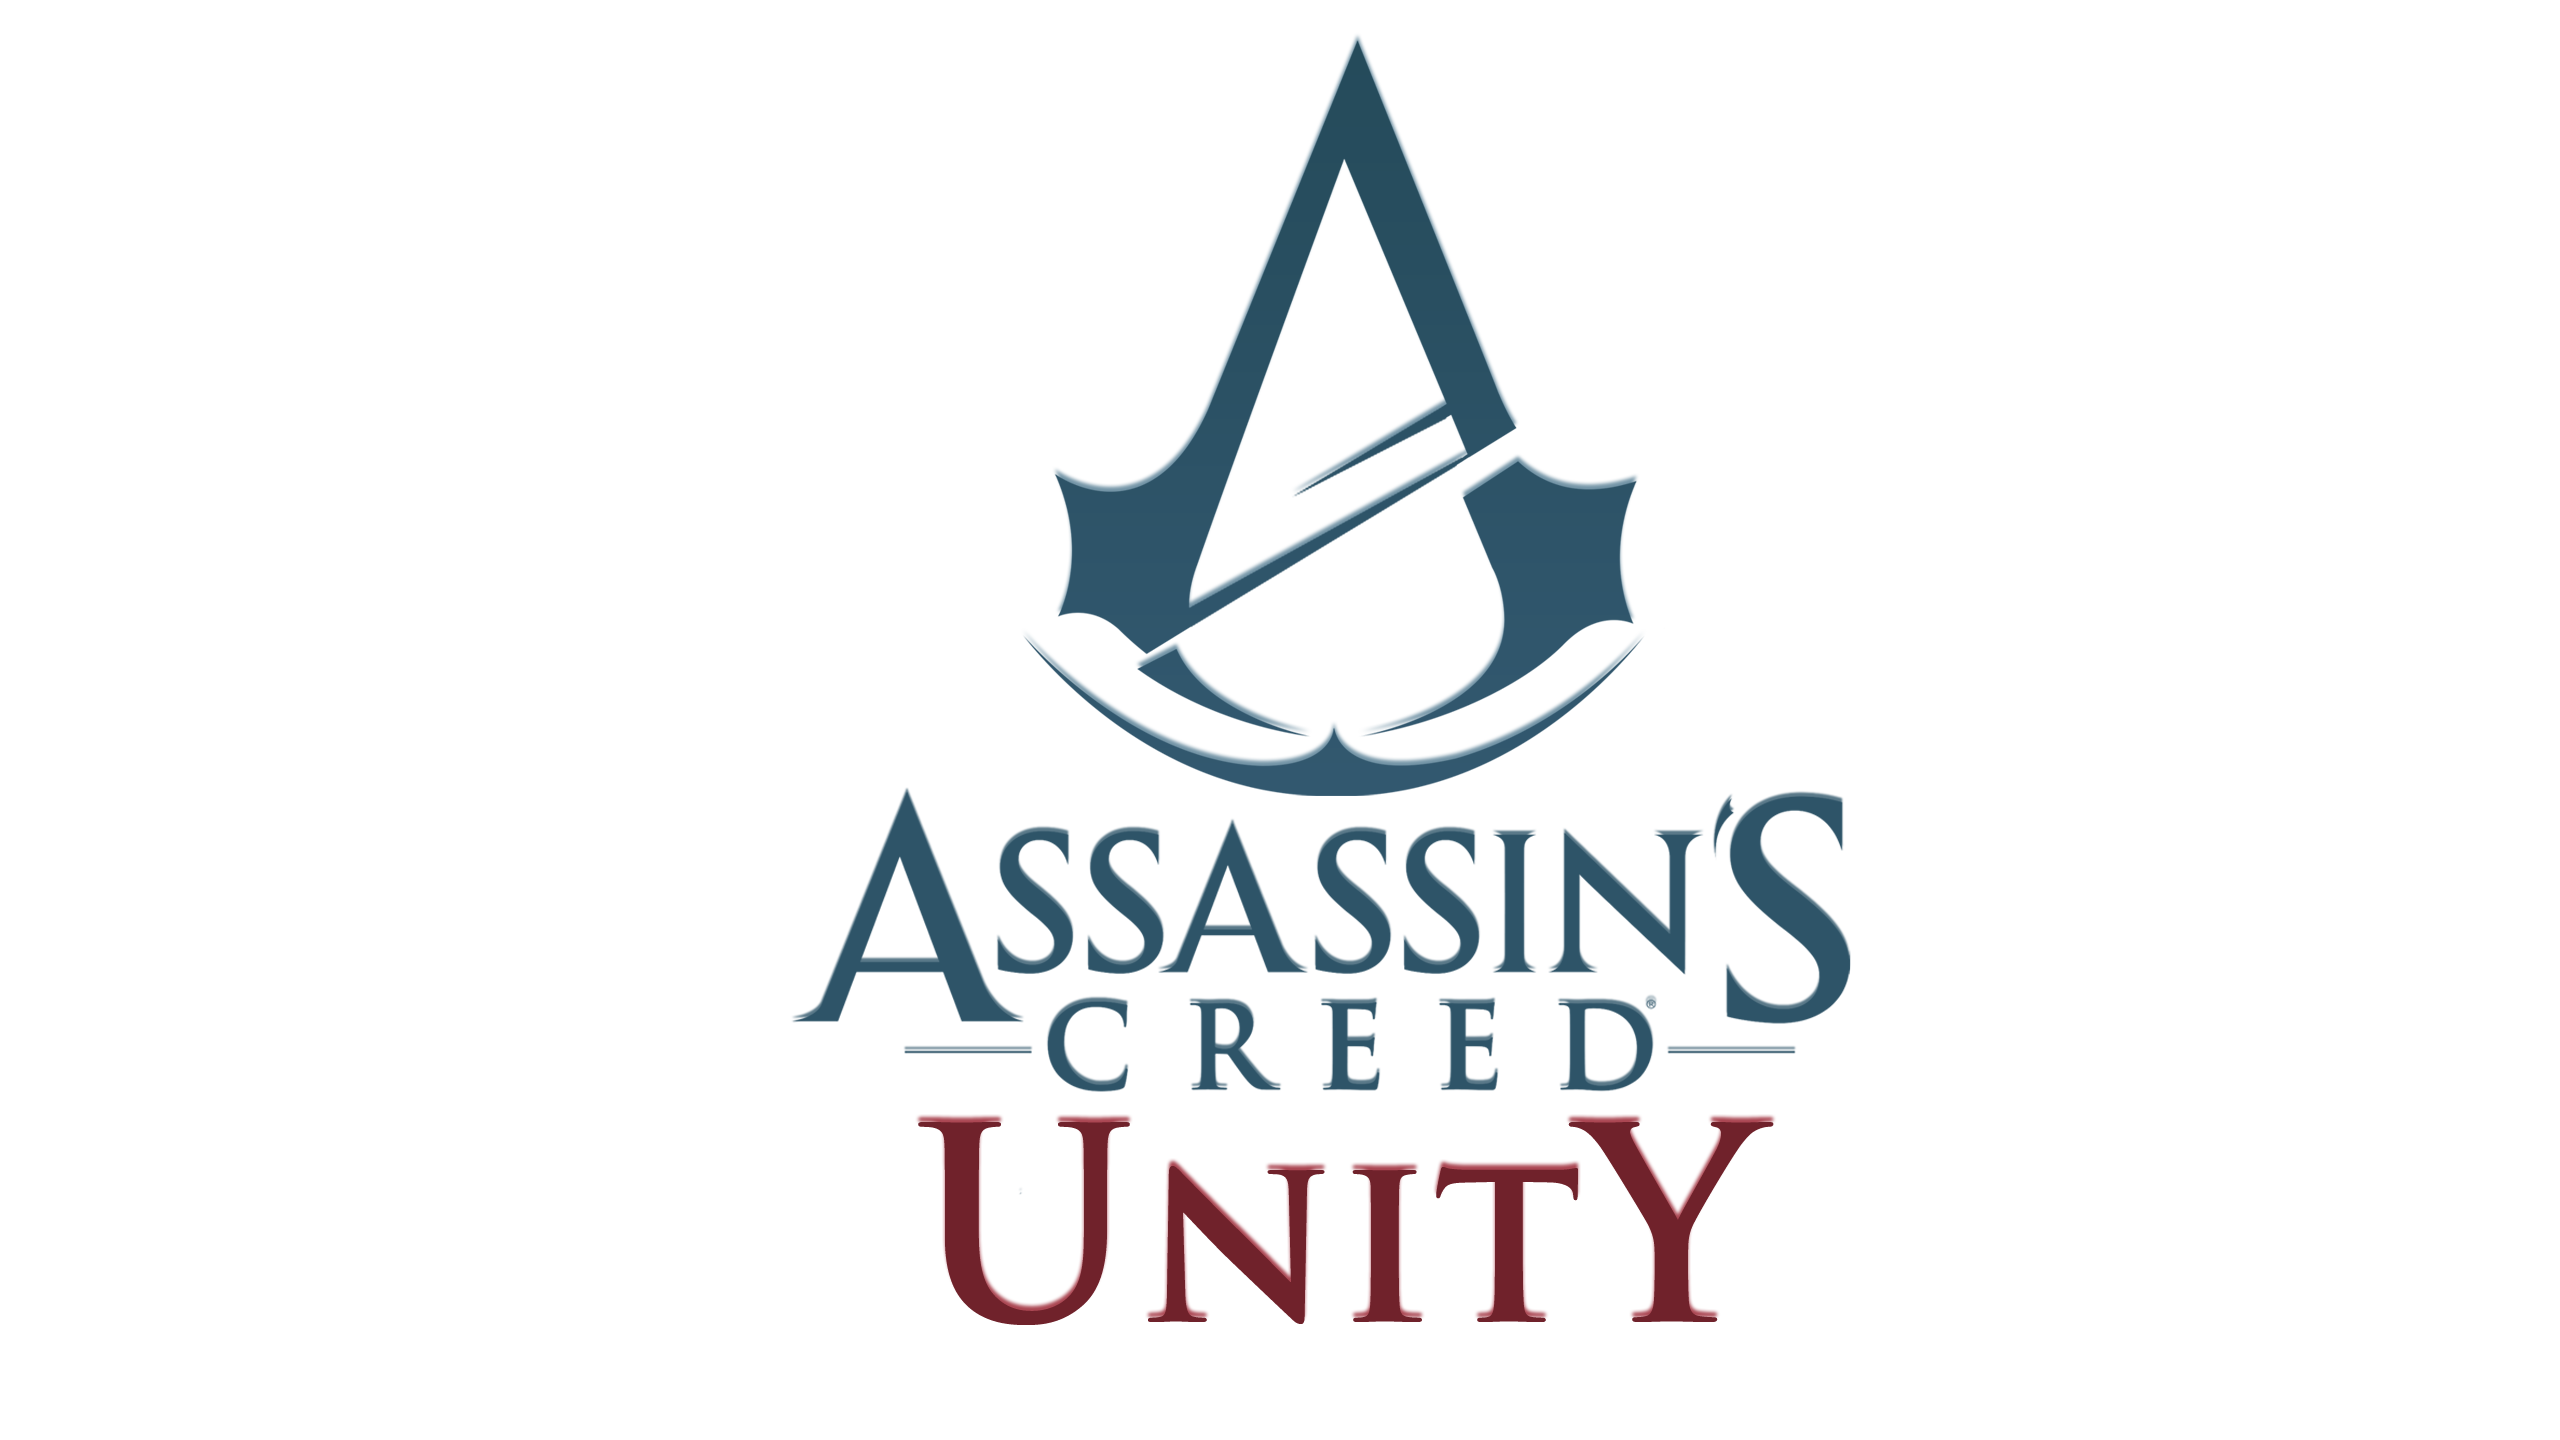 Assassin’s Creed Unity, annunciato il Season Pass